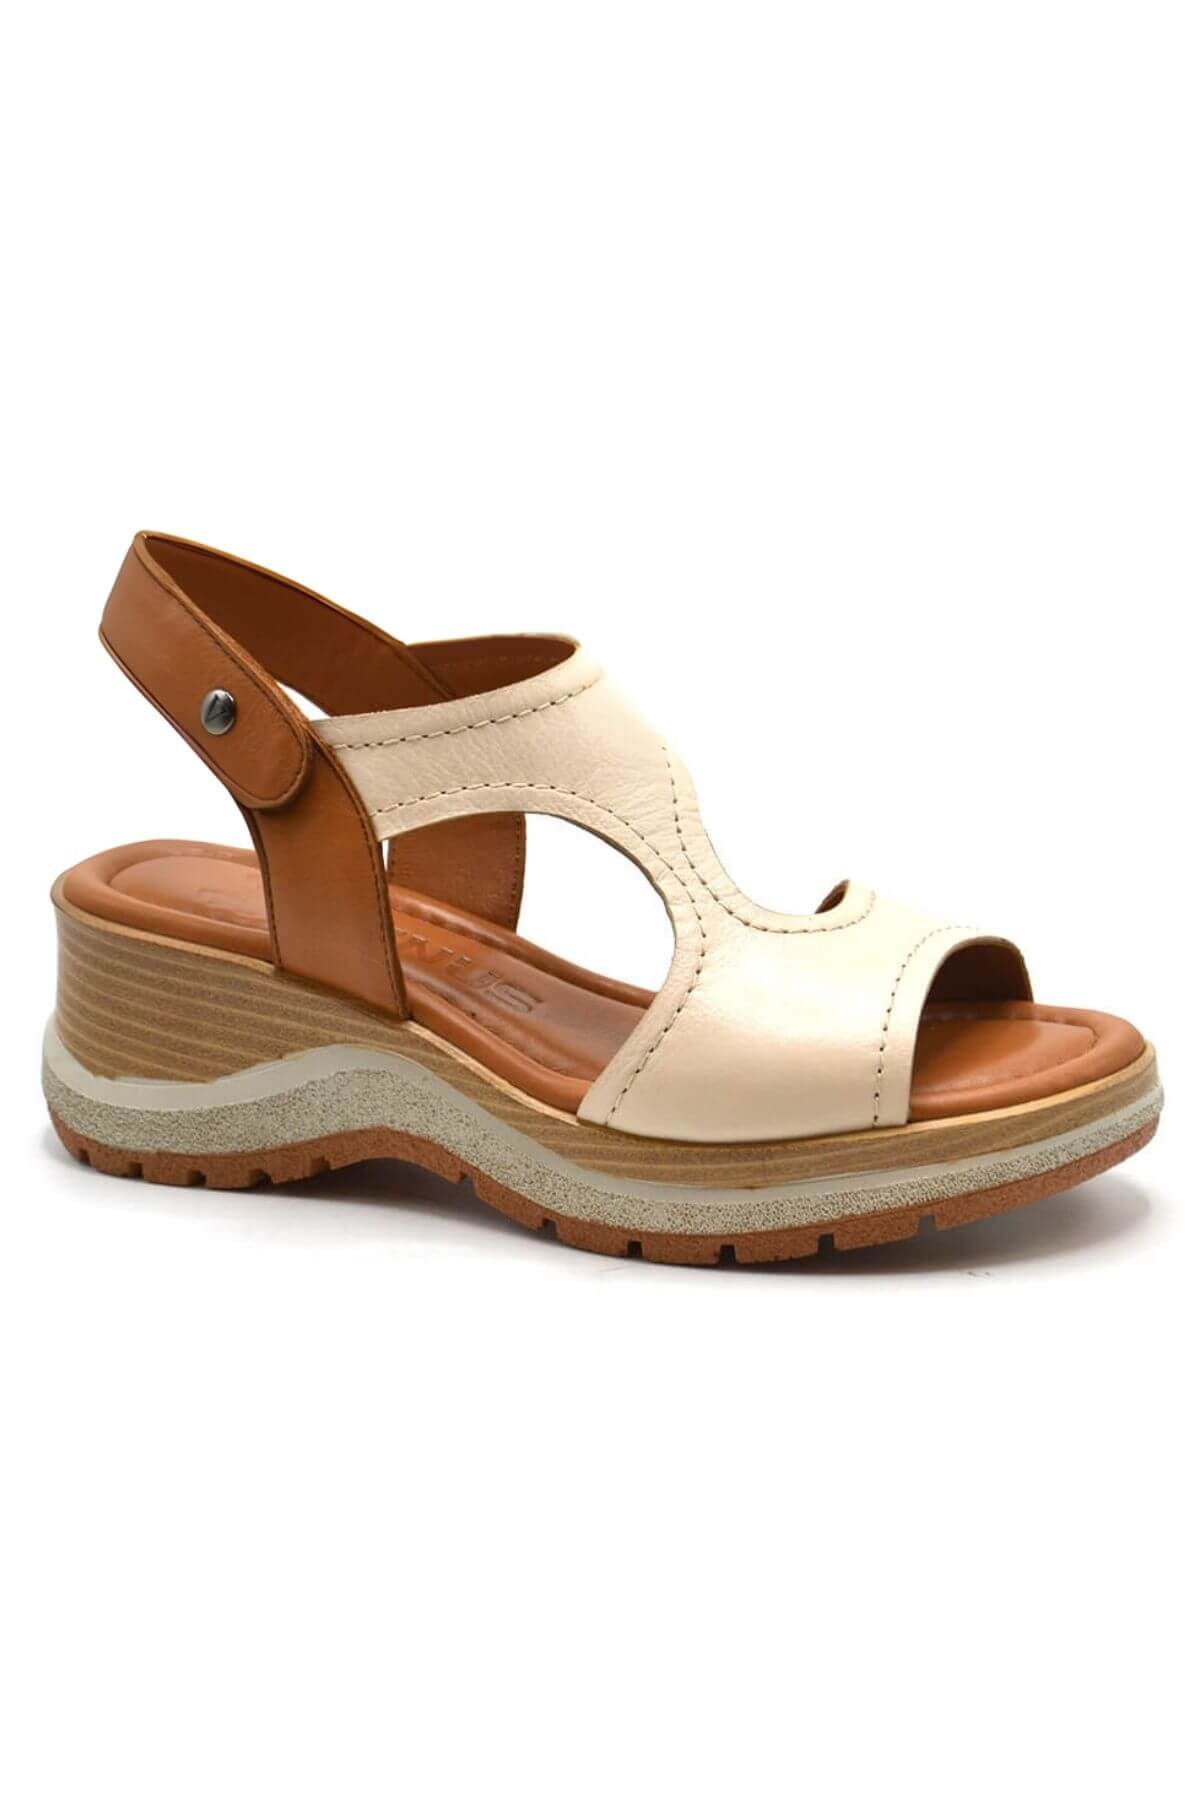 Kadın Comfort Deri Sandalet Bej 2409901Y